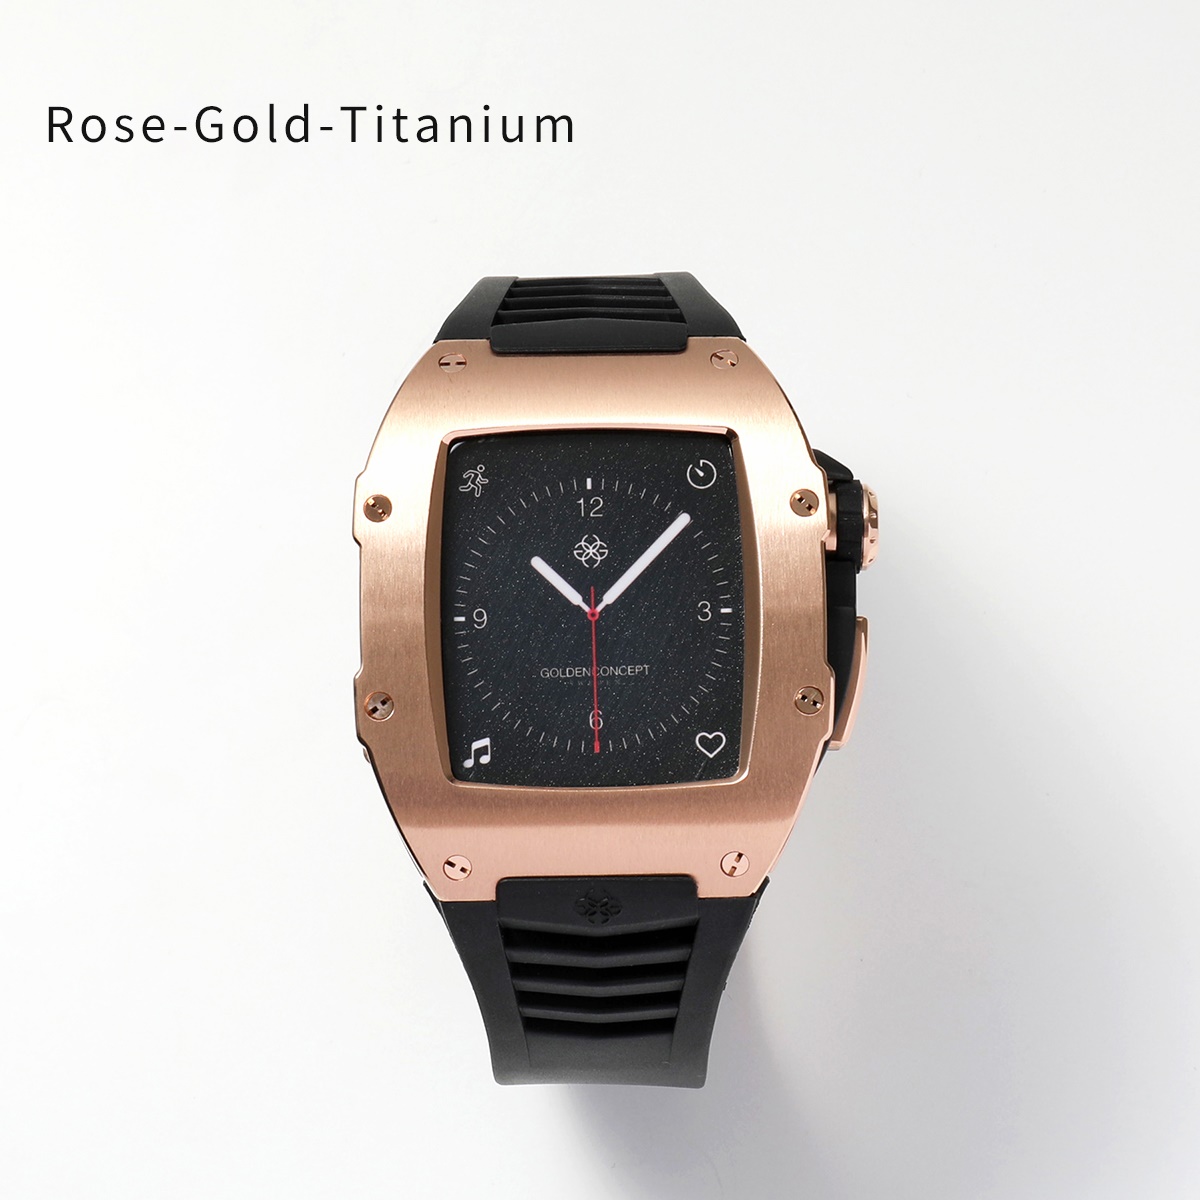 GOLDEN CONCEPT Golden concept Apple Watch Series 7 8 9 Apple watch case RST45 men's titanium Raver strap color 2 color 